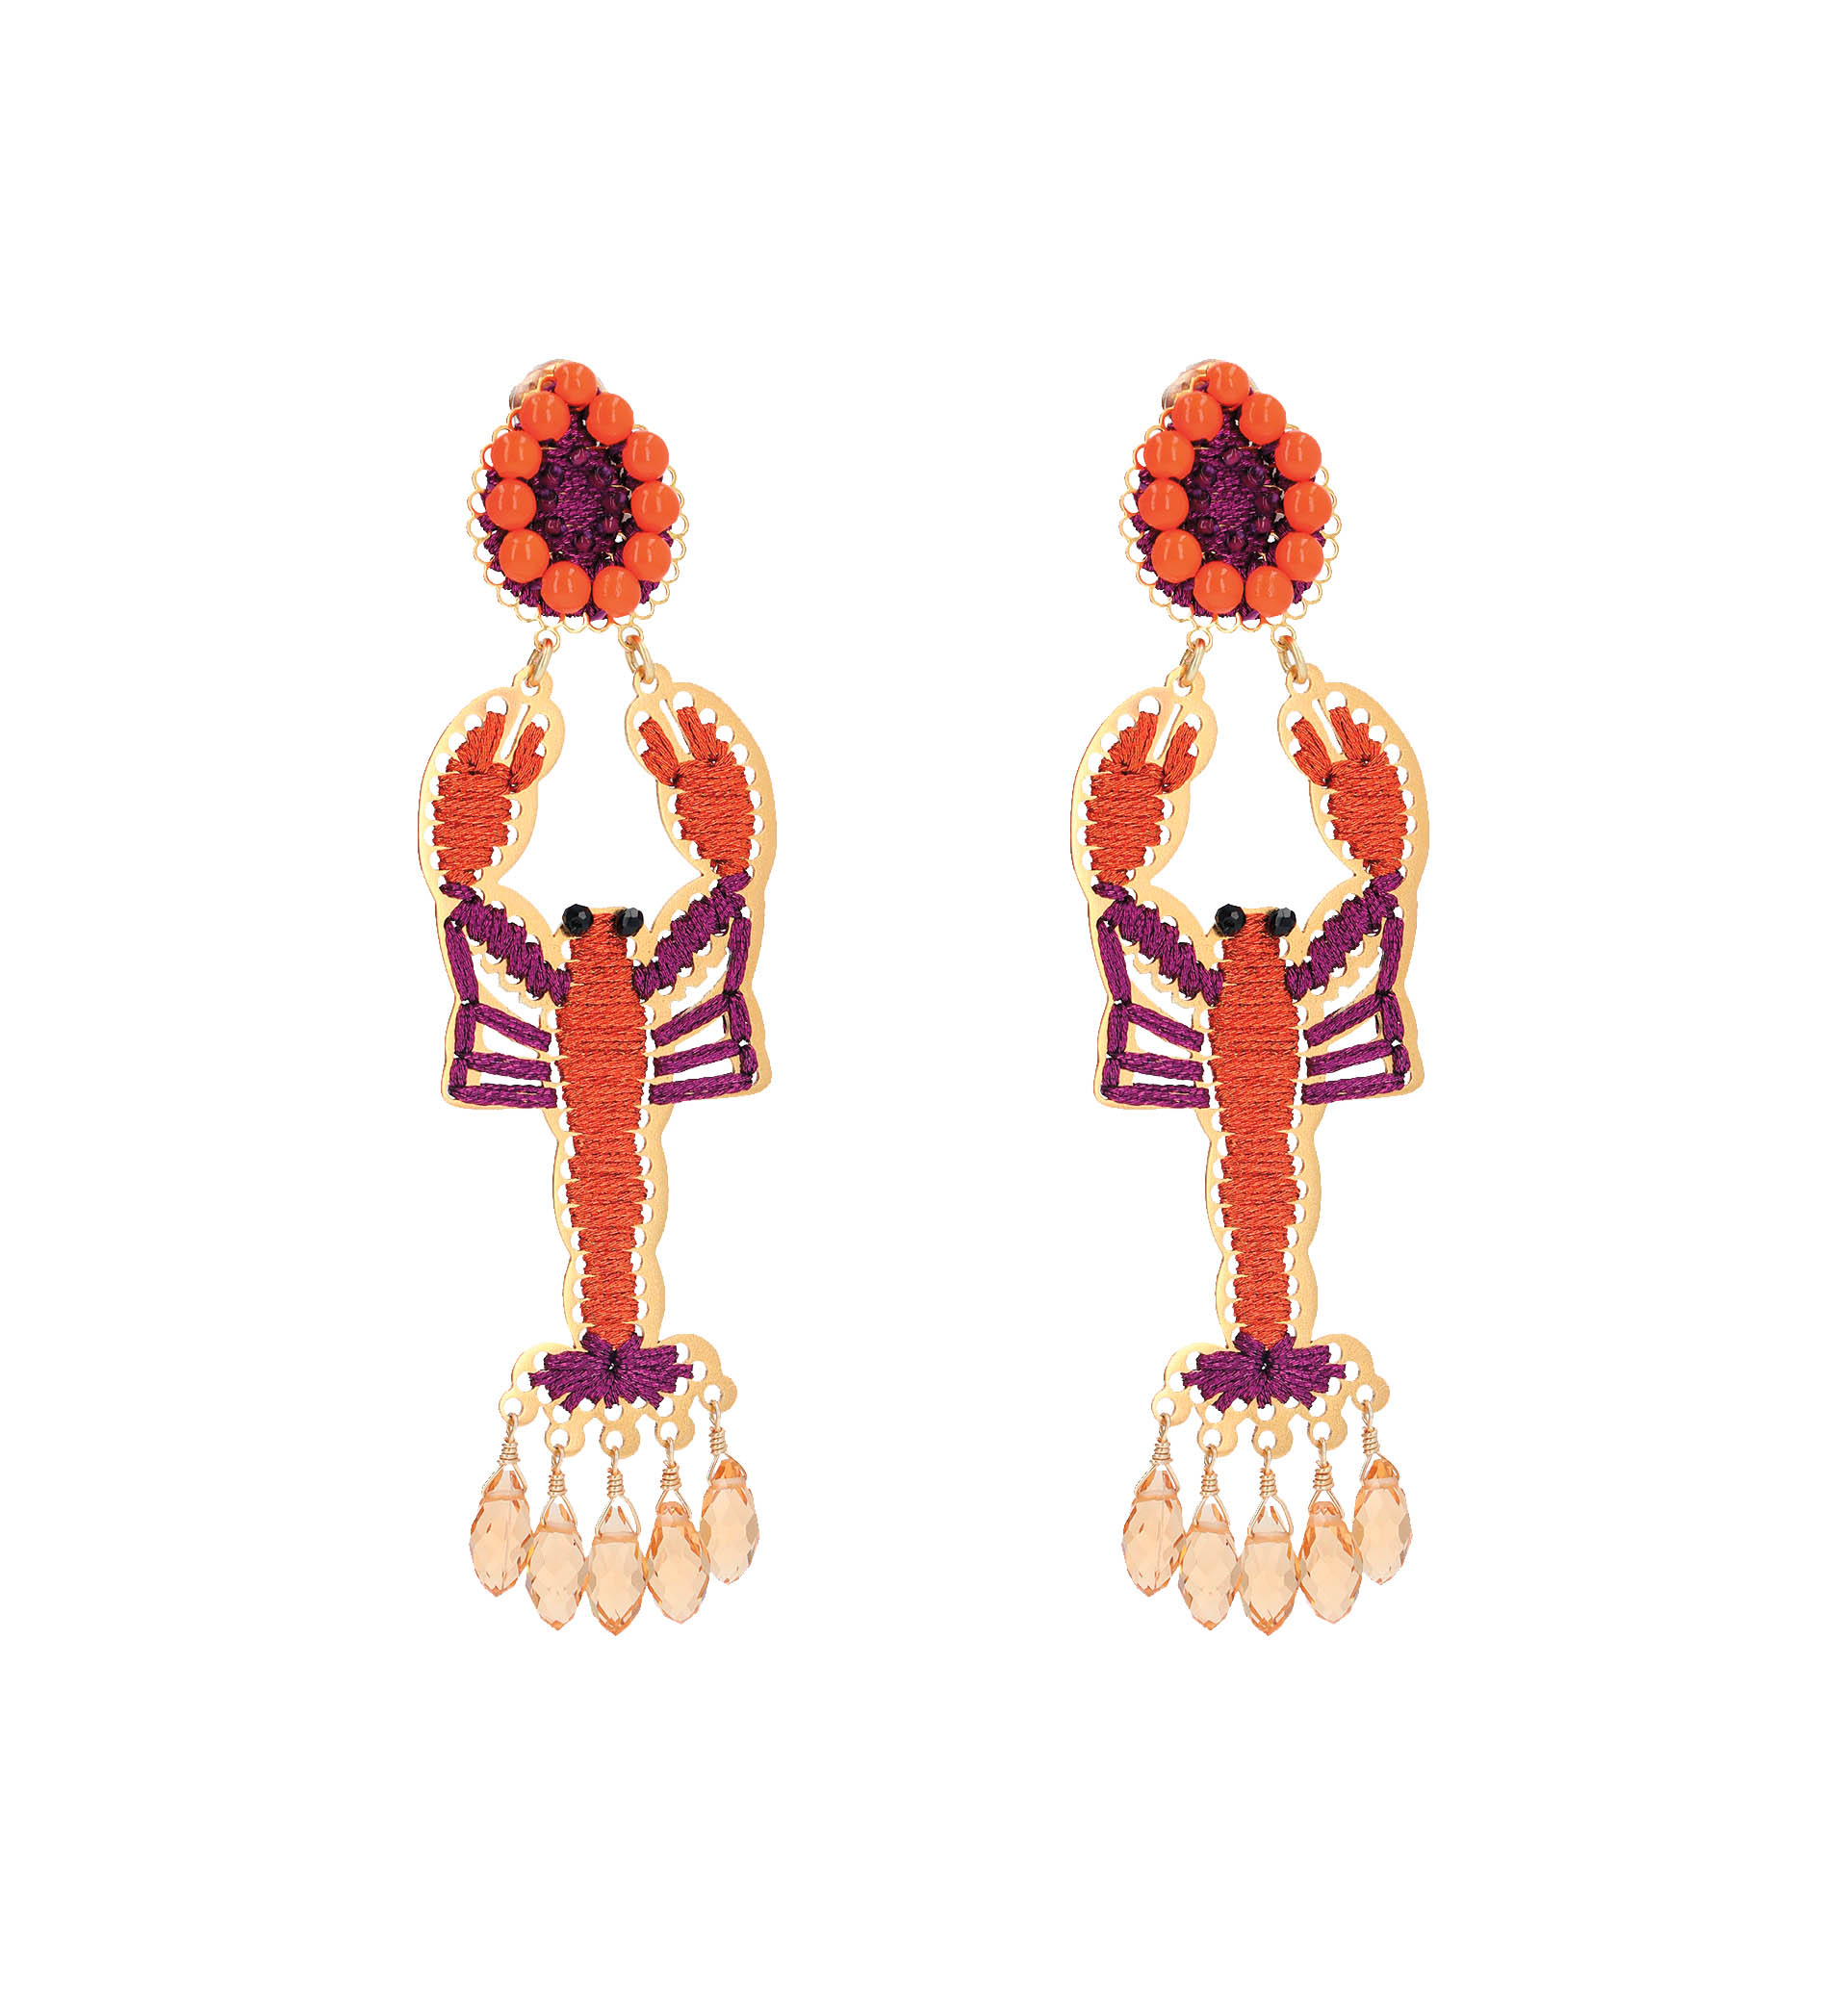 lobster earrings